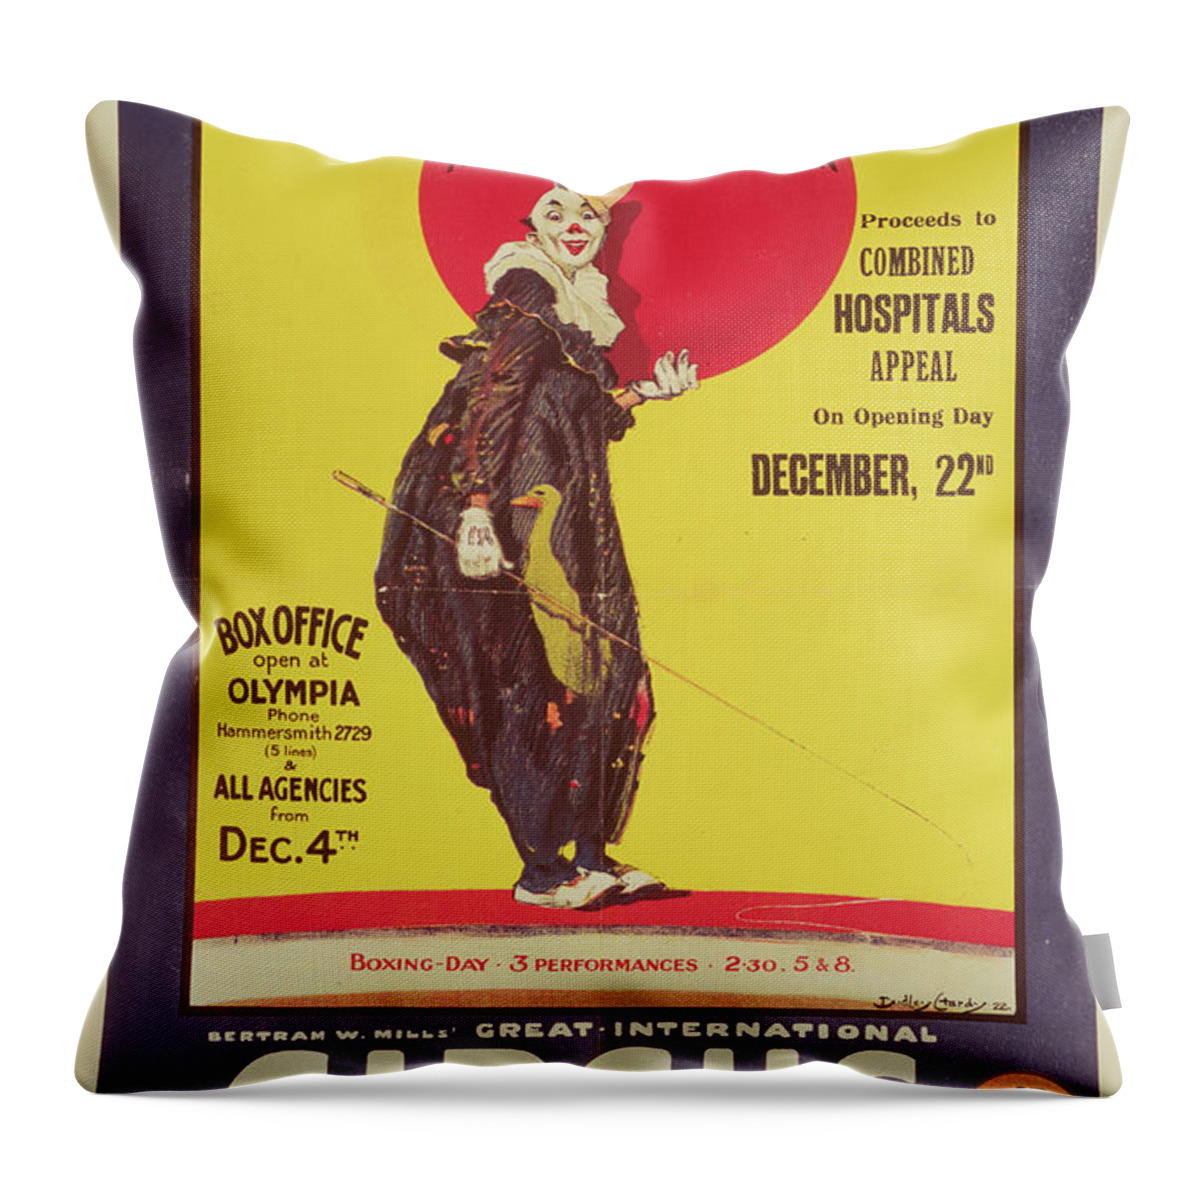 Bertram Mills Circus Poster Throw Pillow featuring the painting Bertram Mills circus poster by Dudley Hardy